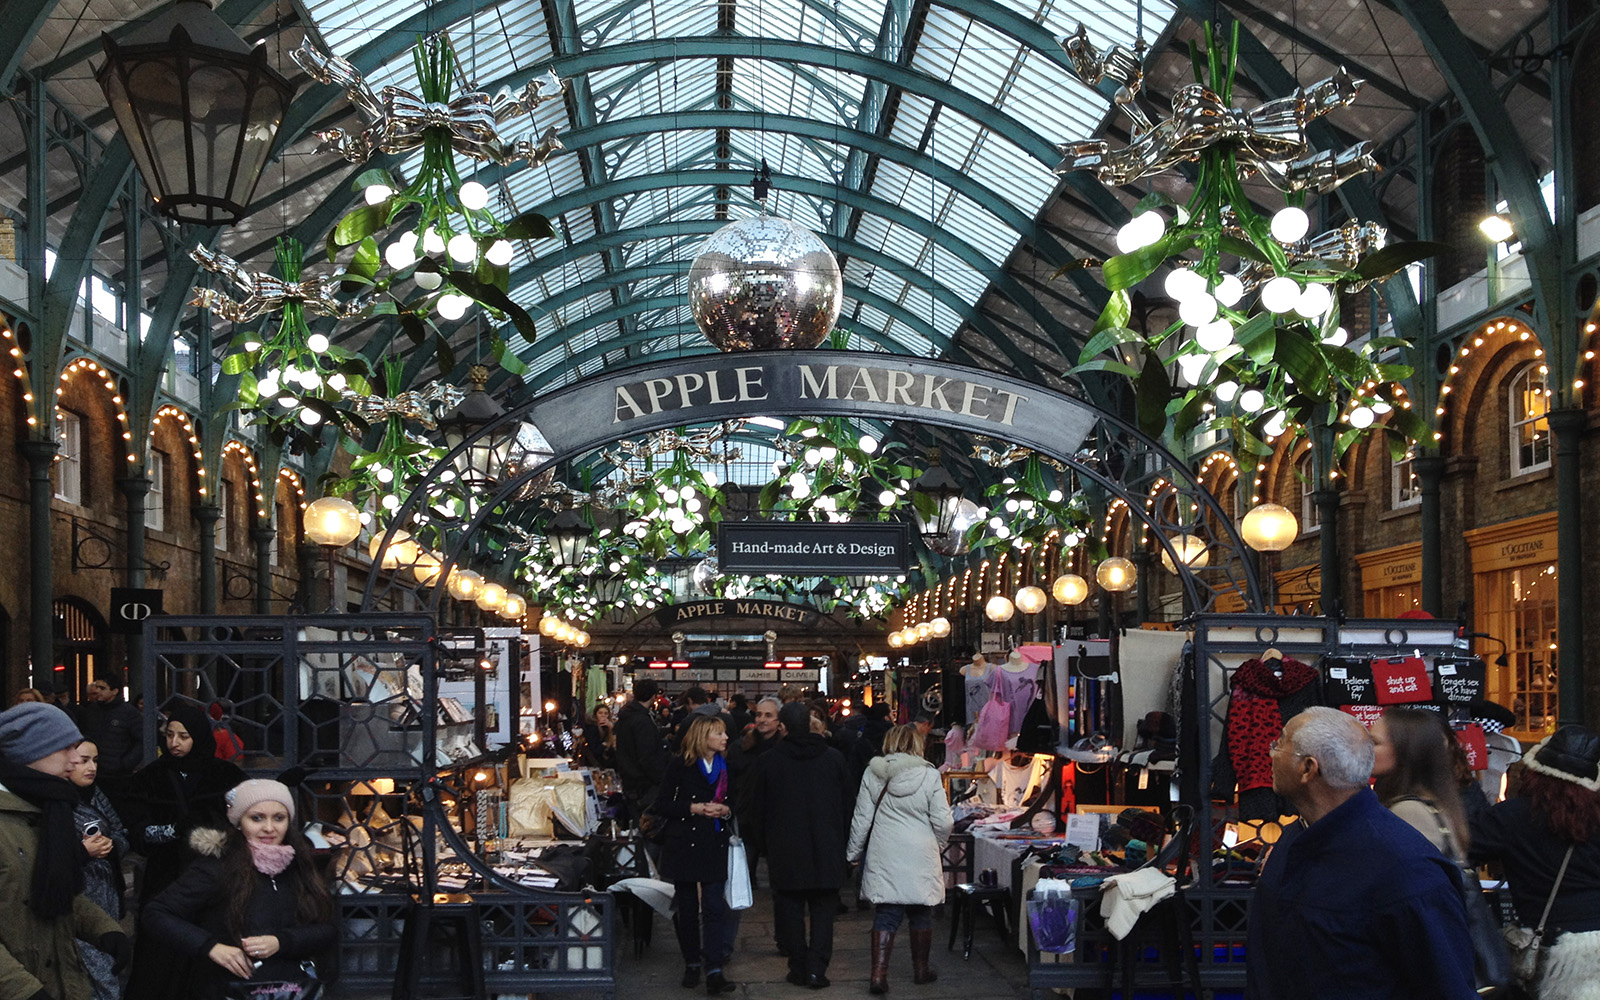 24 December 2015, Covent Garden, Apple Market